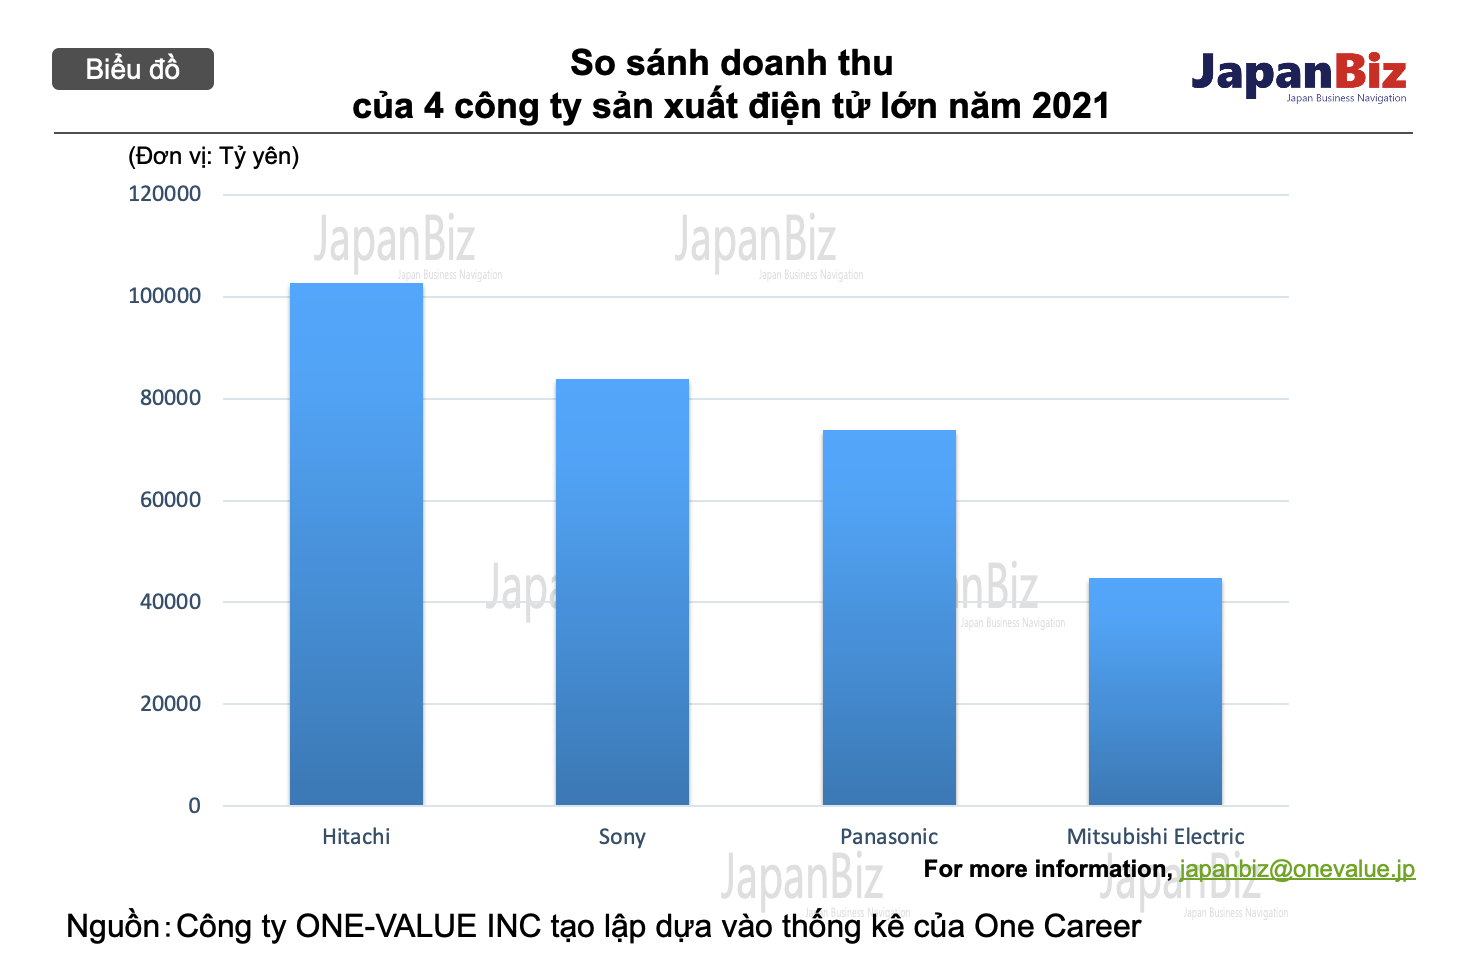 So sách doanh thu của 4 công ty điện tử Nhật Bản lớn năm 2021